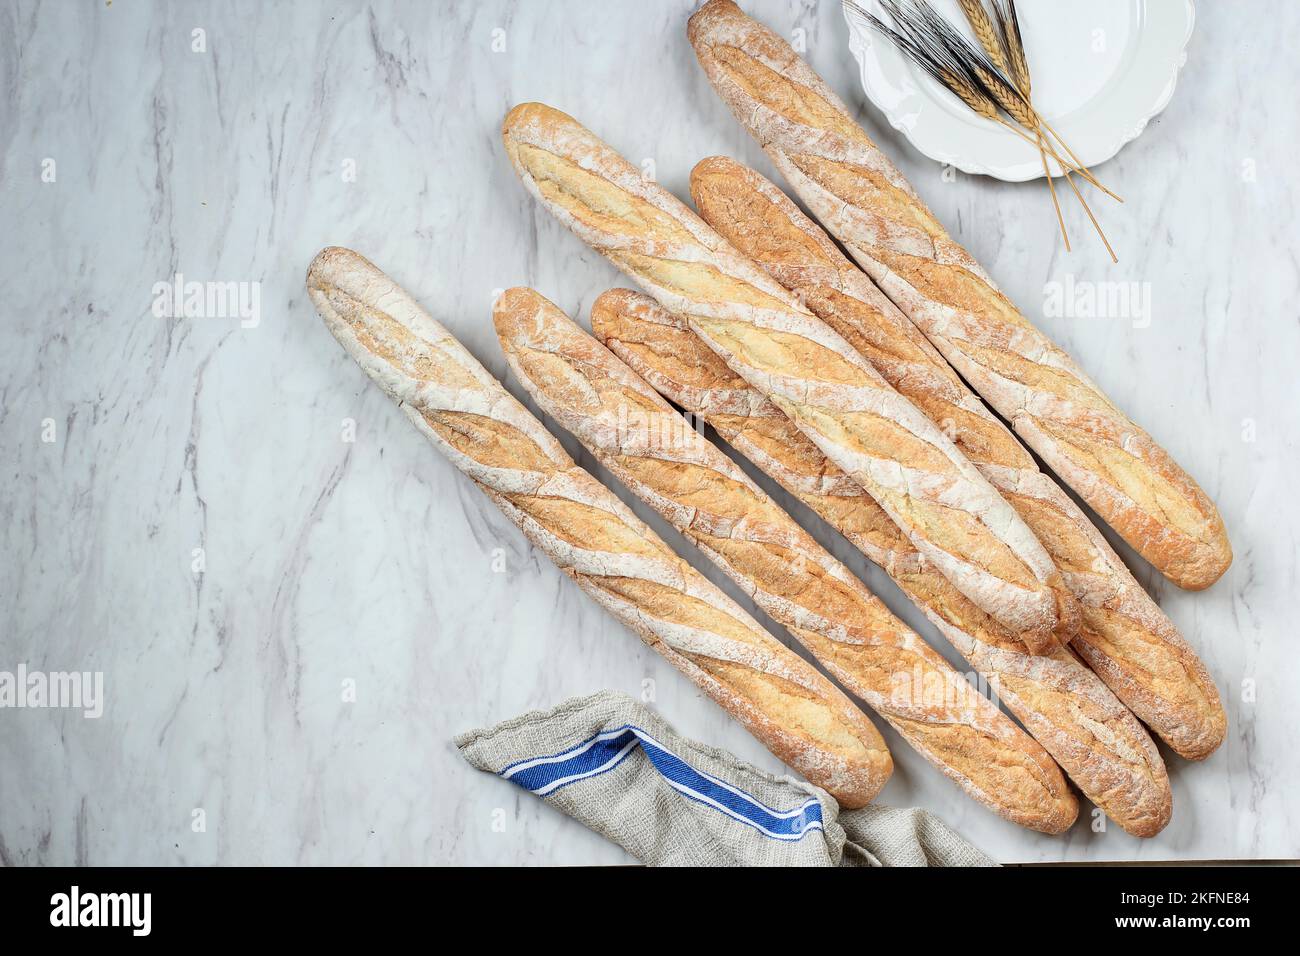 Baguettes douces françaises fraîchement cuites sur une table en marbre blanc. Vue de dessus avec espace de copie Banque D'Images